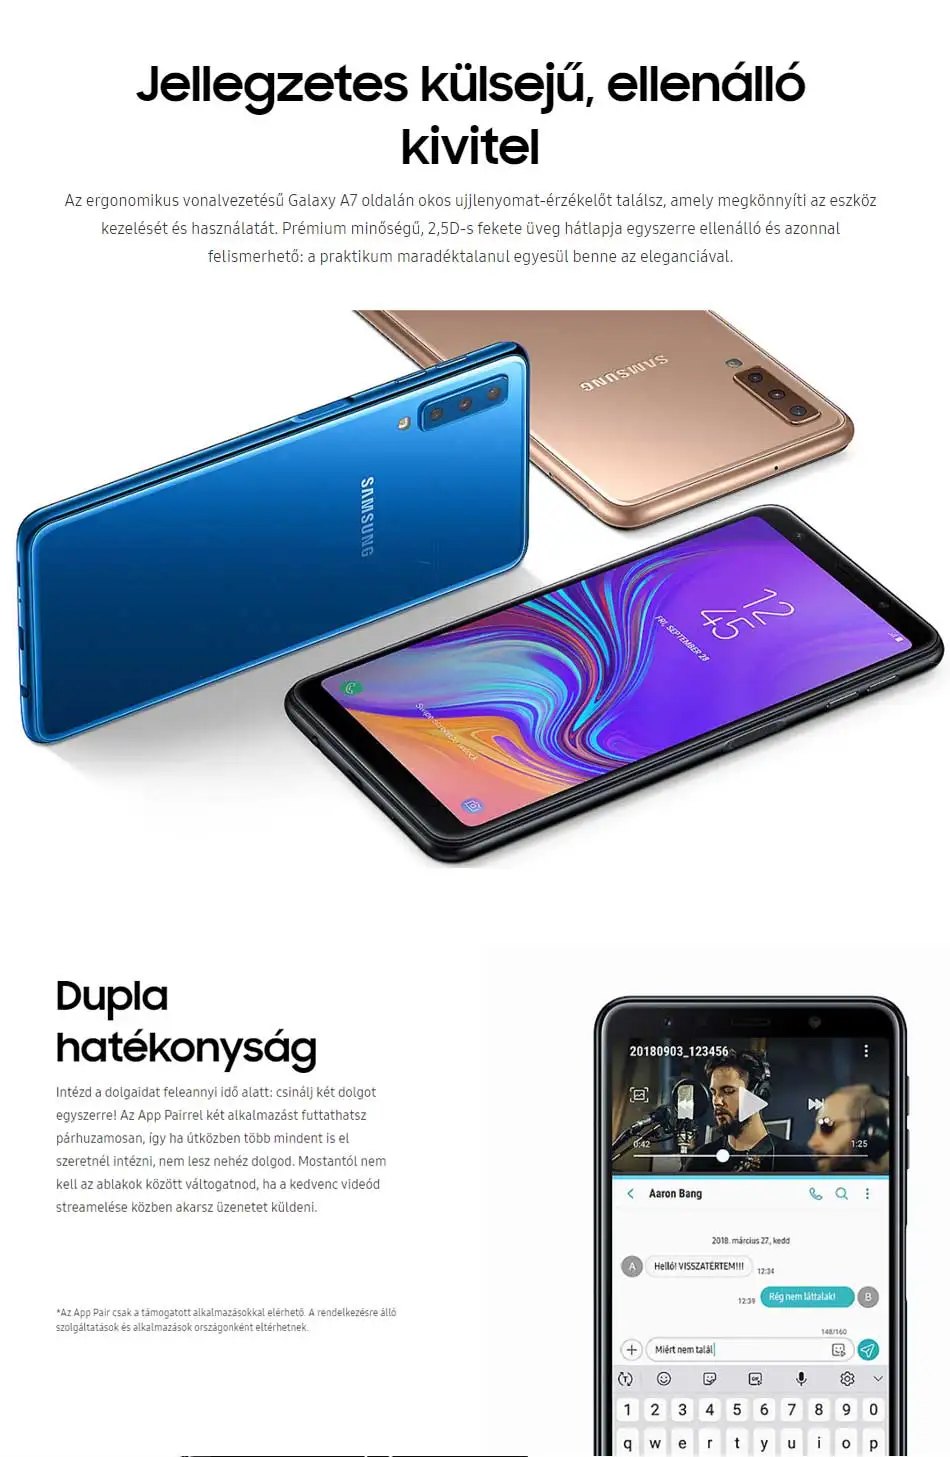 Мобильный телефон samsung Galaxy A7 A750F-DS, 4G LTE, 6,0 дюймов, 4 Гб ОЗУ, 64 Гб ПЗУ, три камеры заднего вида, Android, сканер отпечатков пальцев, смартфон